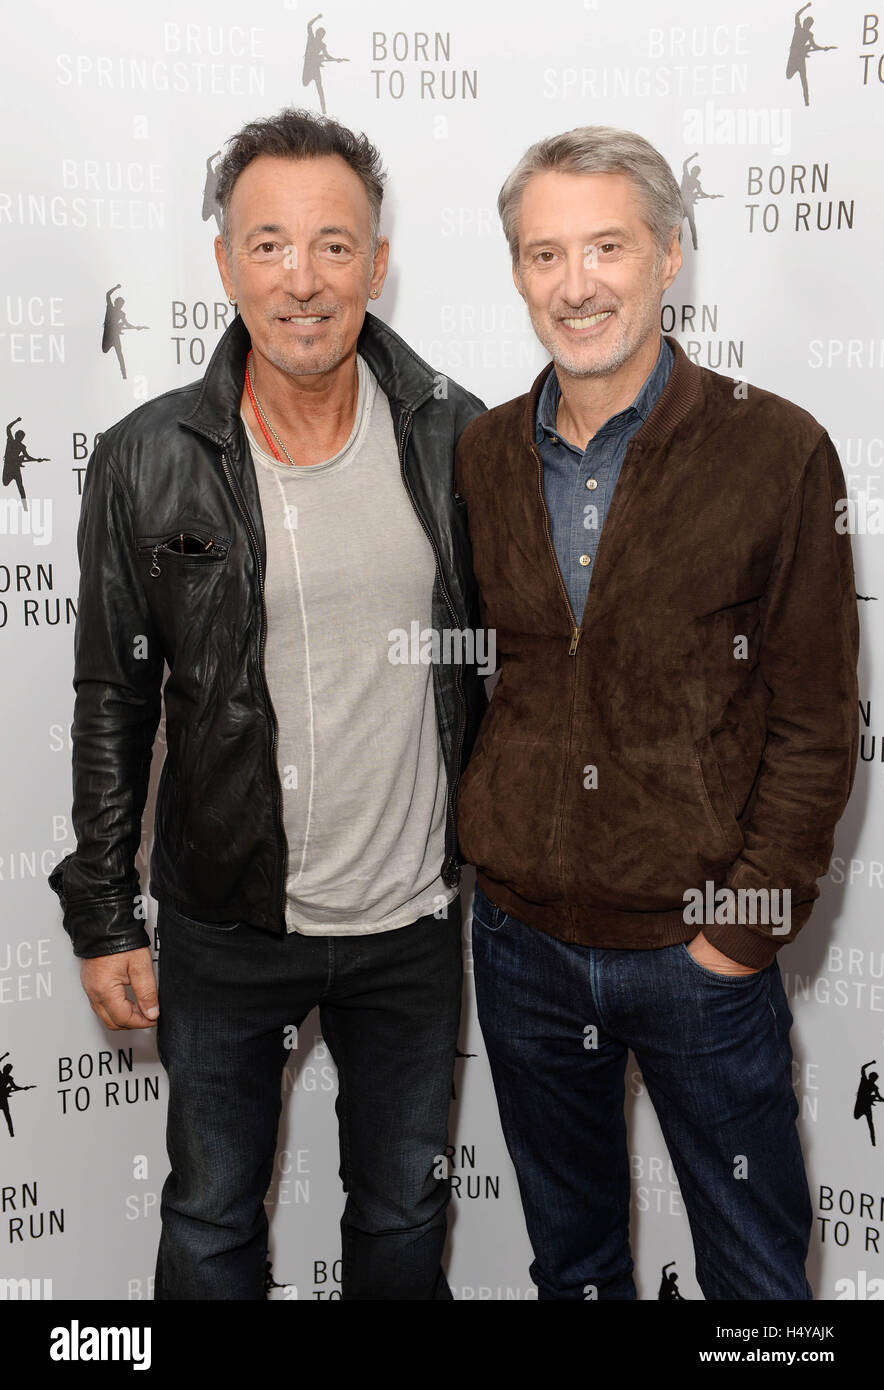 Bruce Springsteen y Antoine de Caunes, presentador de televisión francés, como el cantautor habla sobre su autobiografía Born to Run, en un evento de conversación celebrado hoy en la ACI de Londres. Foto de stock